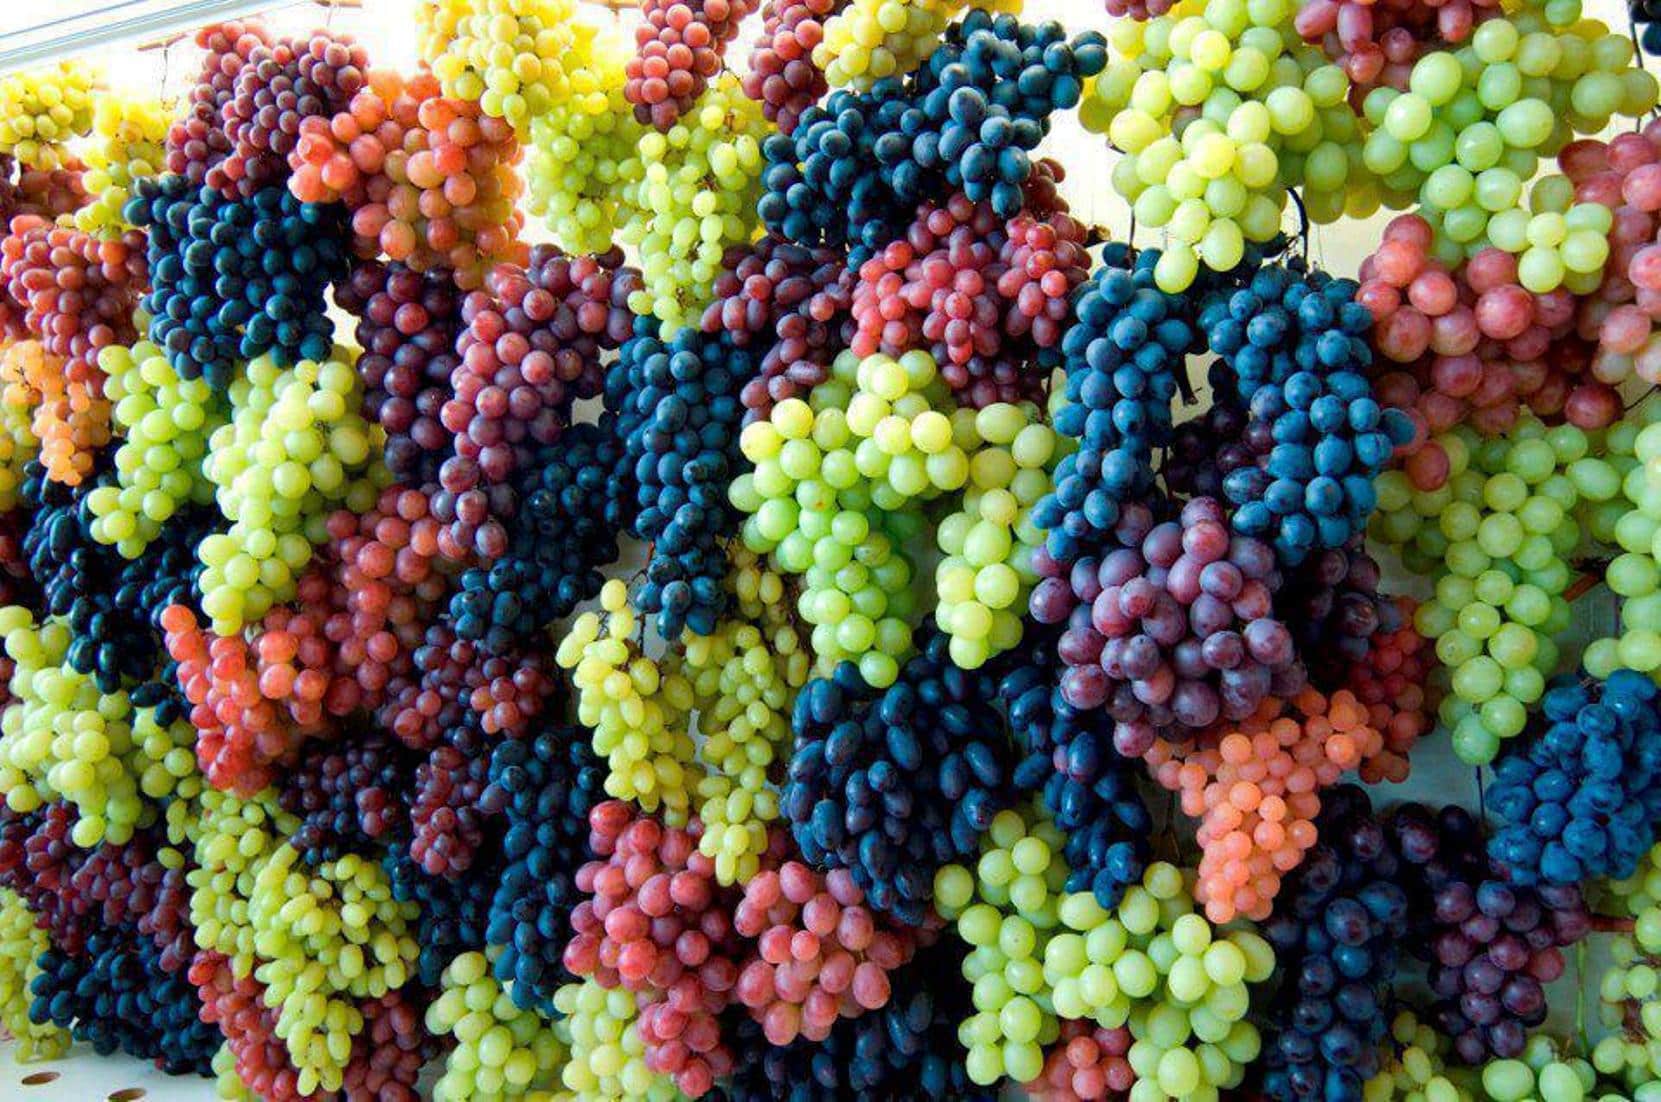 Виноград в больших количествах. Виноград кишмиш чёрный Узбекистан. Маковей виноград. Мозак виноград. Rainbow grapes виноград.